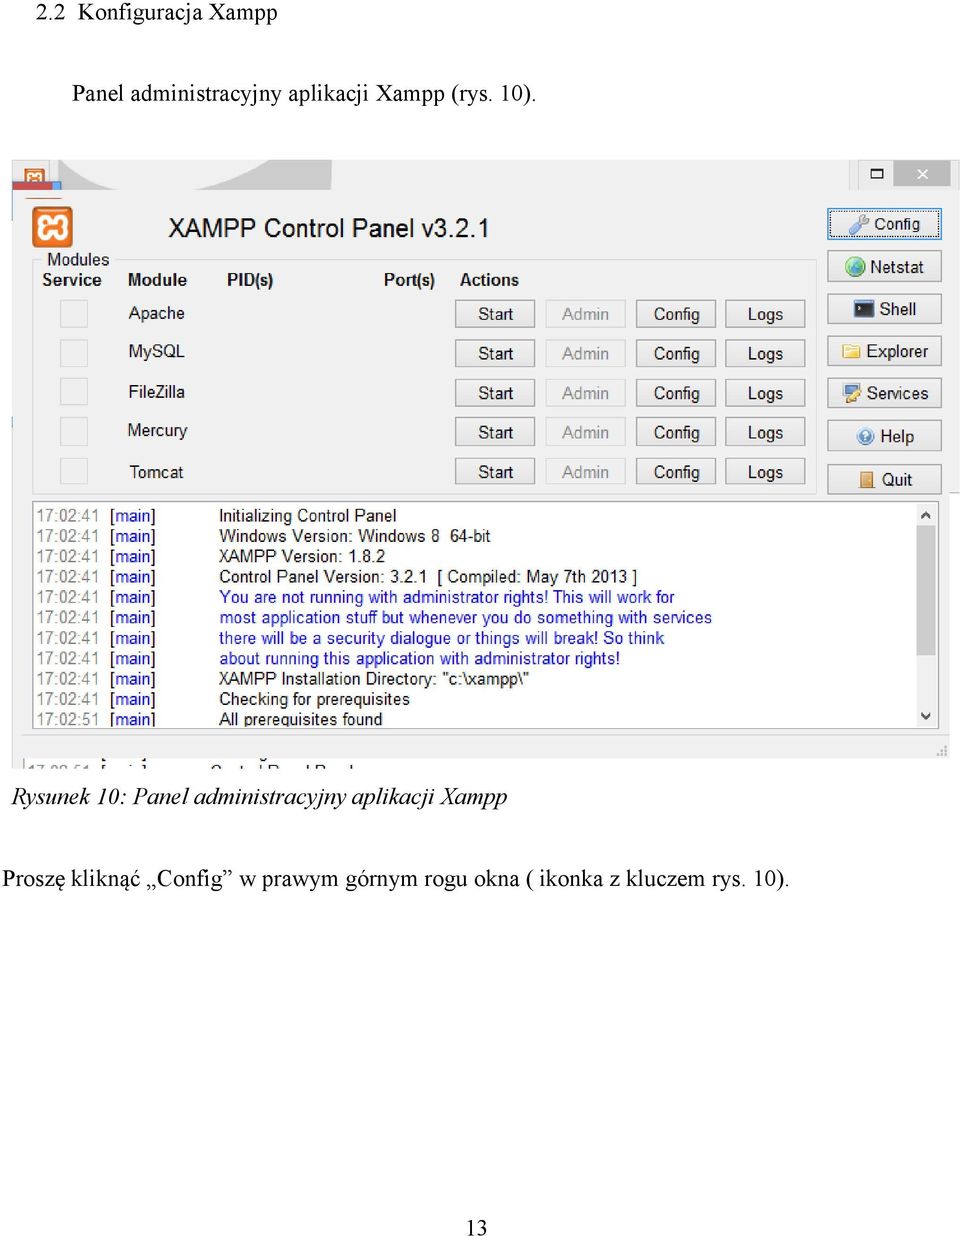 Rysunek 10: Panel administracyjny aplikacji Xampp